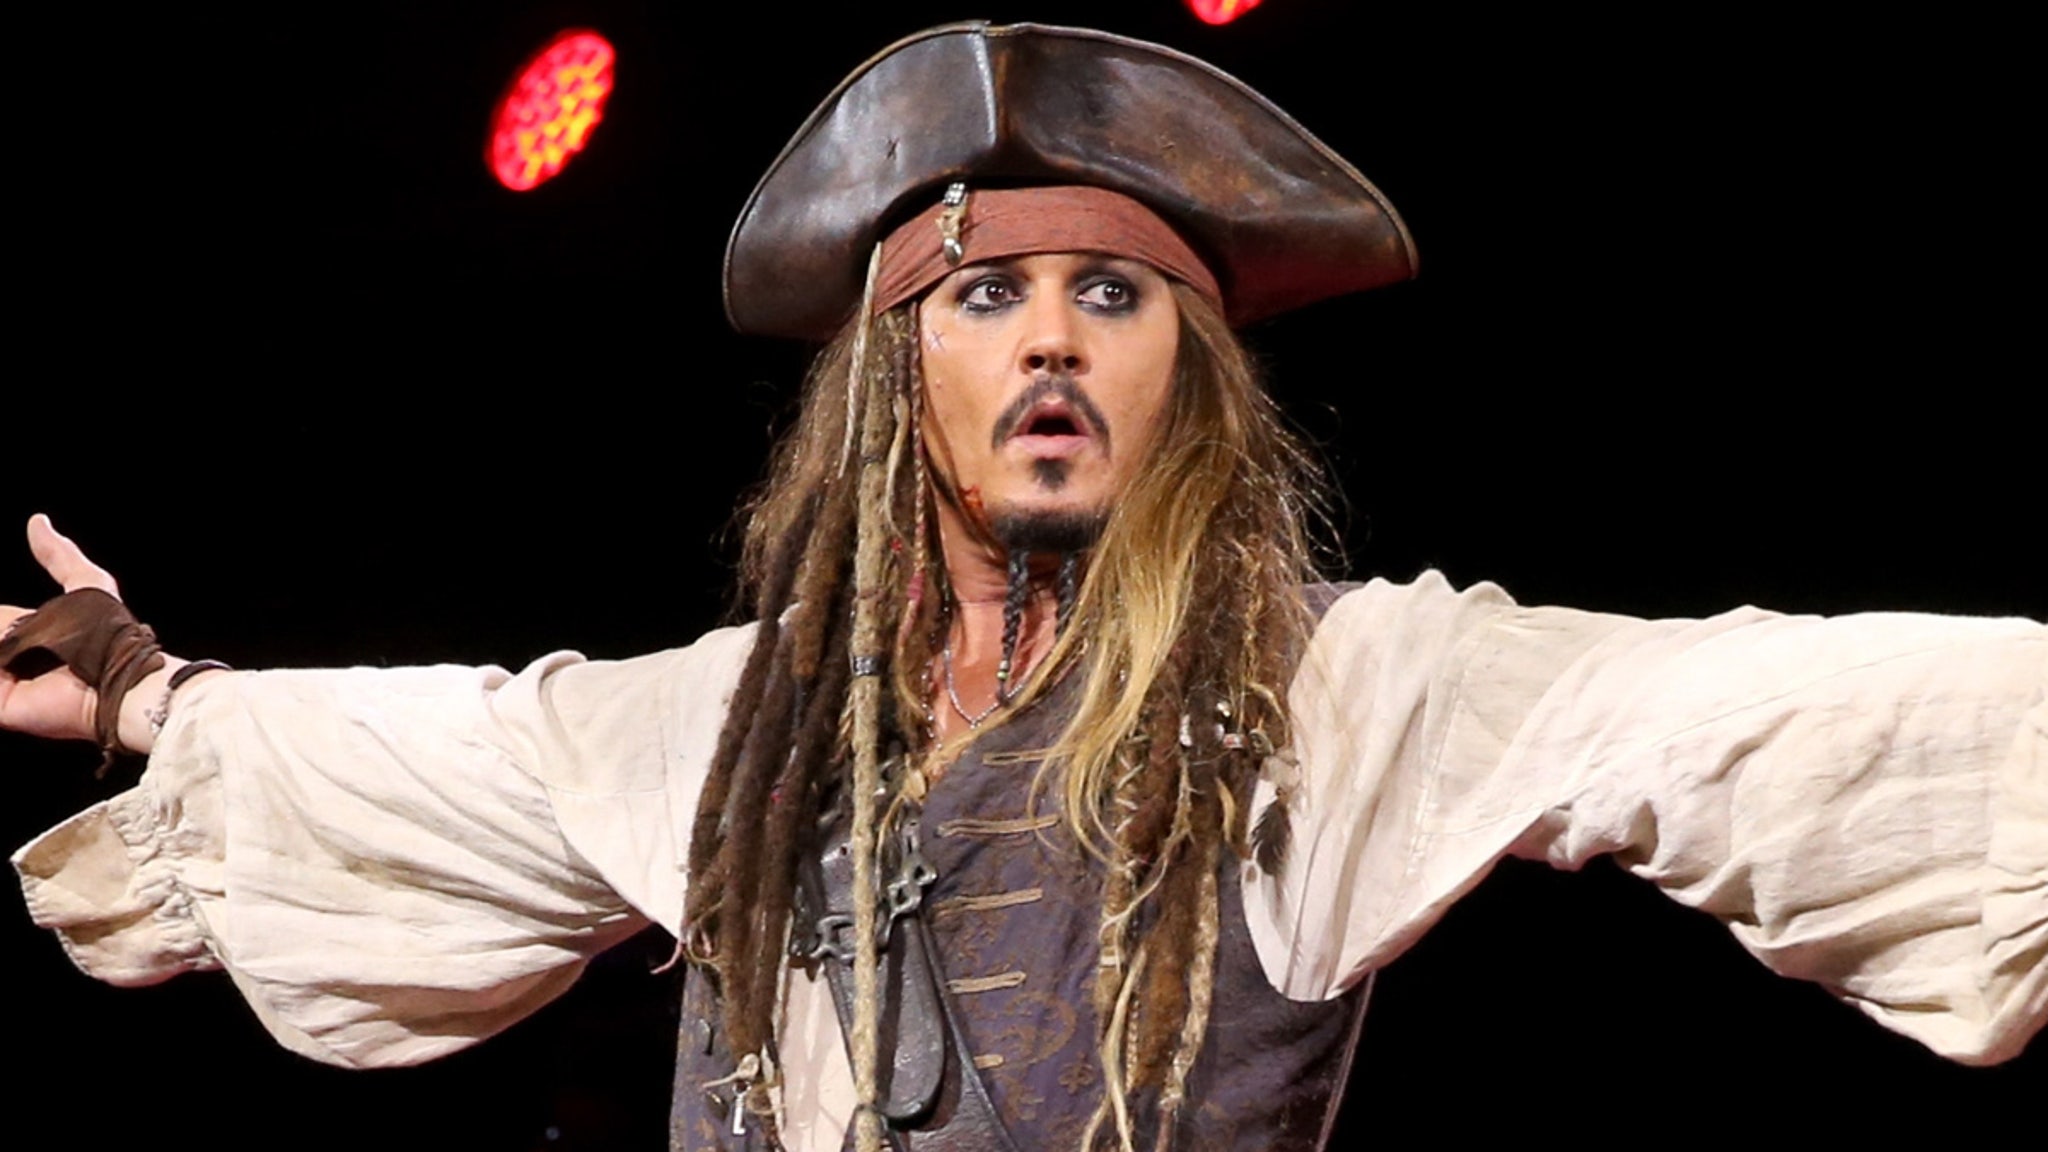 Johnny Depp Jack Sparrow Halloween Costume Sees Huge Spike in Sales